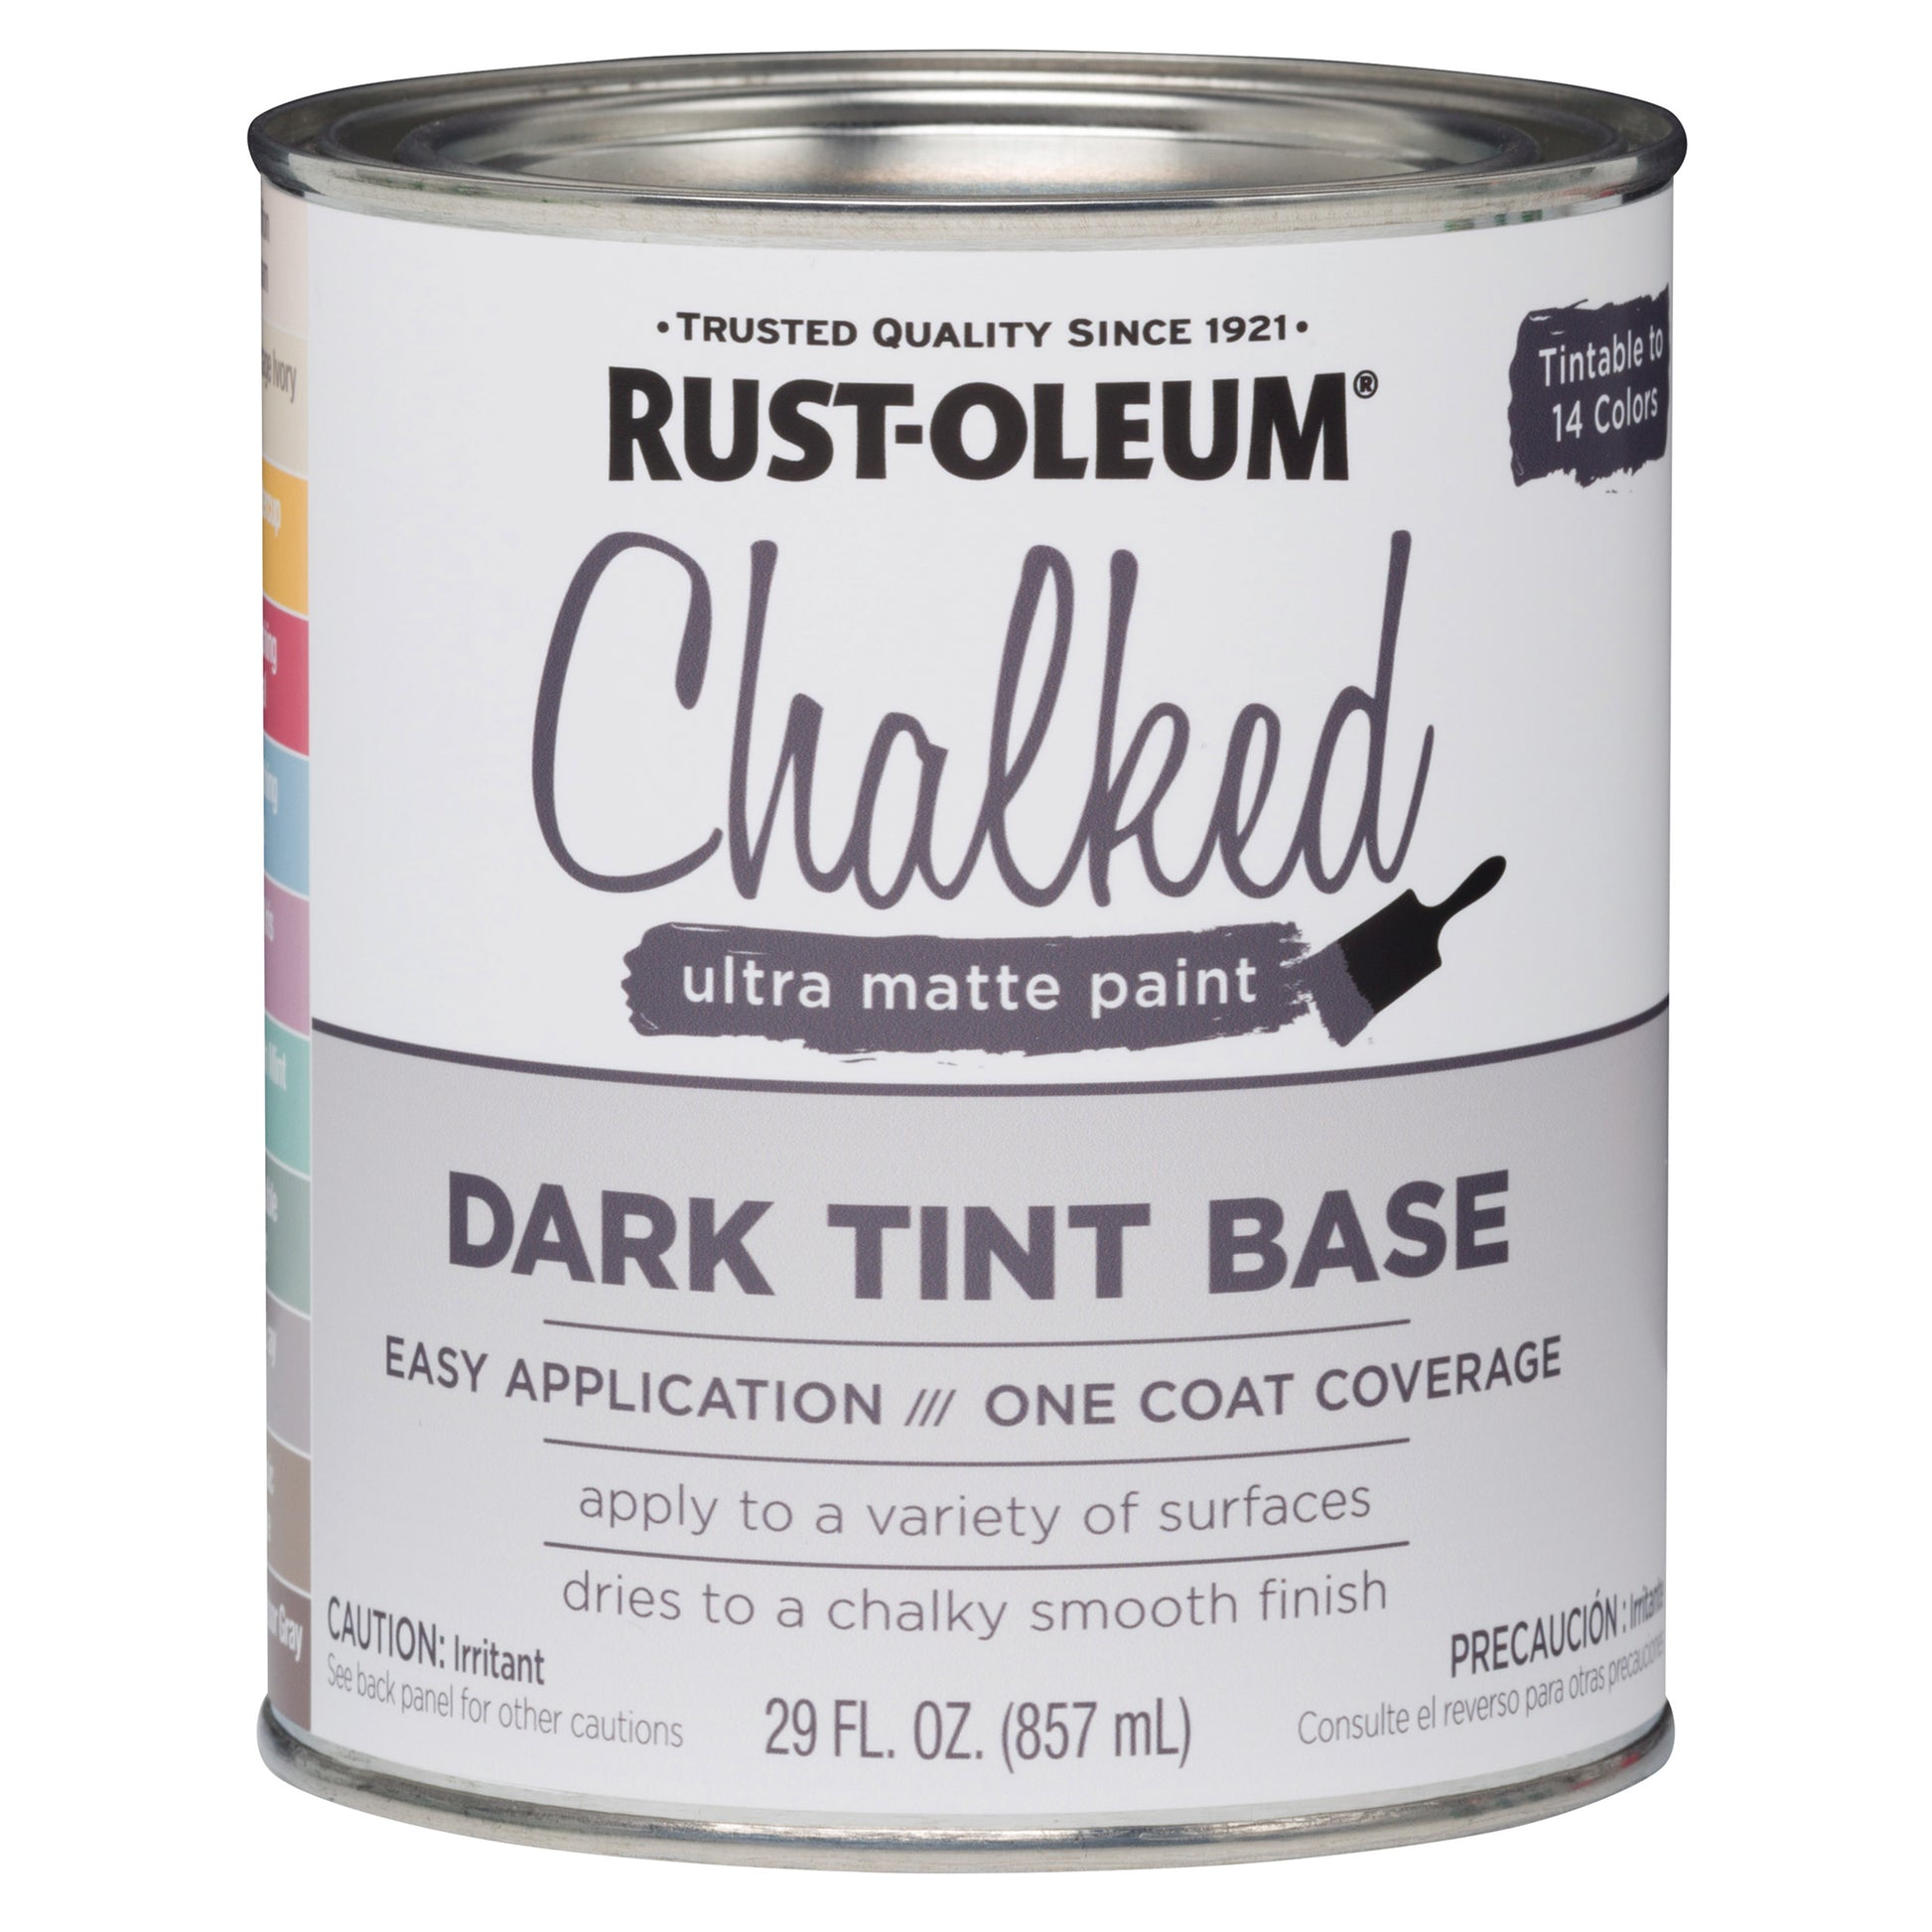 Rustoleum Chalked Dark Tint Base alt 0